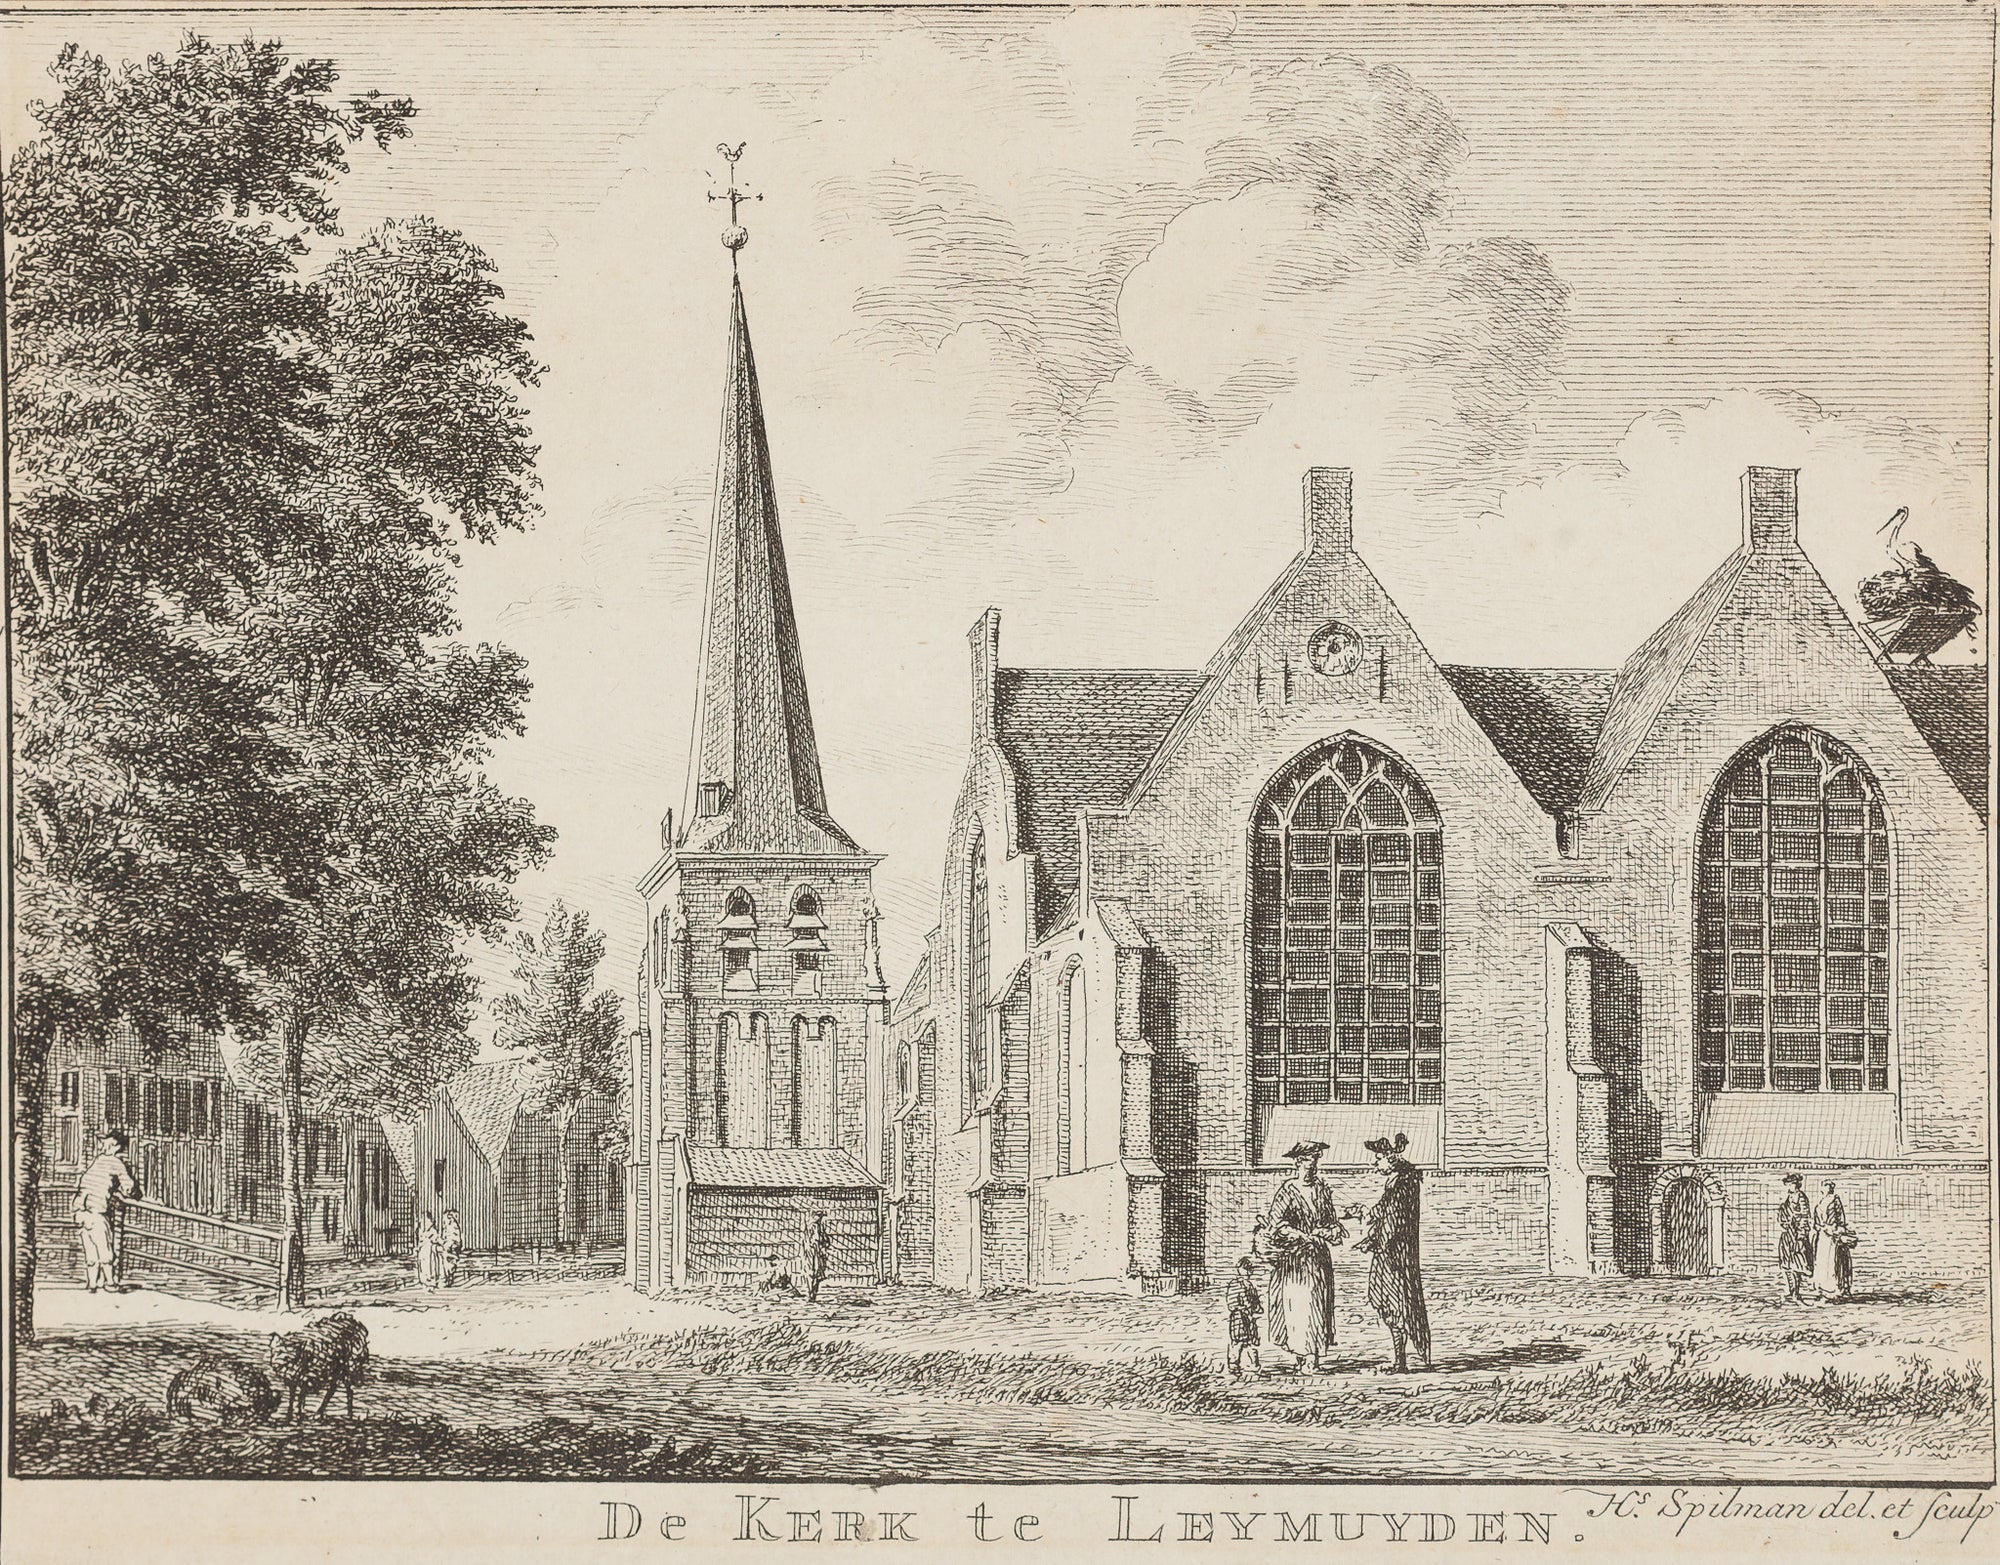 Antieke prent. Antique print. Title: 'De Kerk te Leymuiden' ; Engraving by Hendrik Spilman from ca. 1750. Leimuiden, Zuid Holland, engraving, Holland, Leymuiden, kerk, antique print, spilman